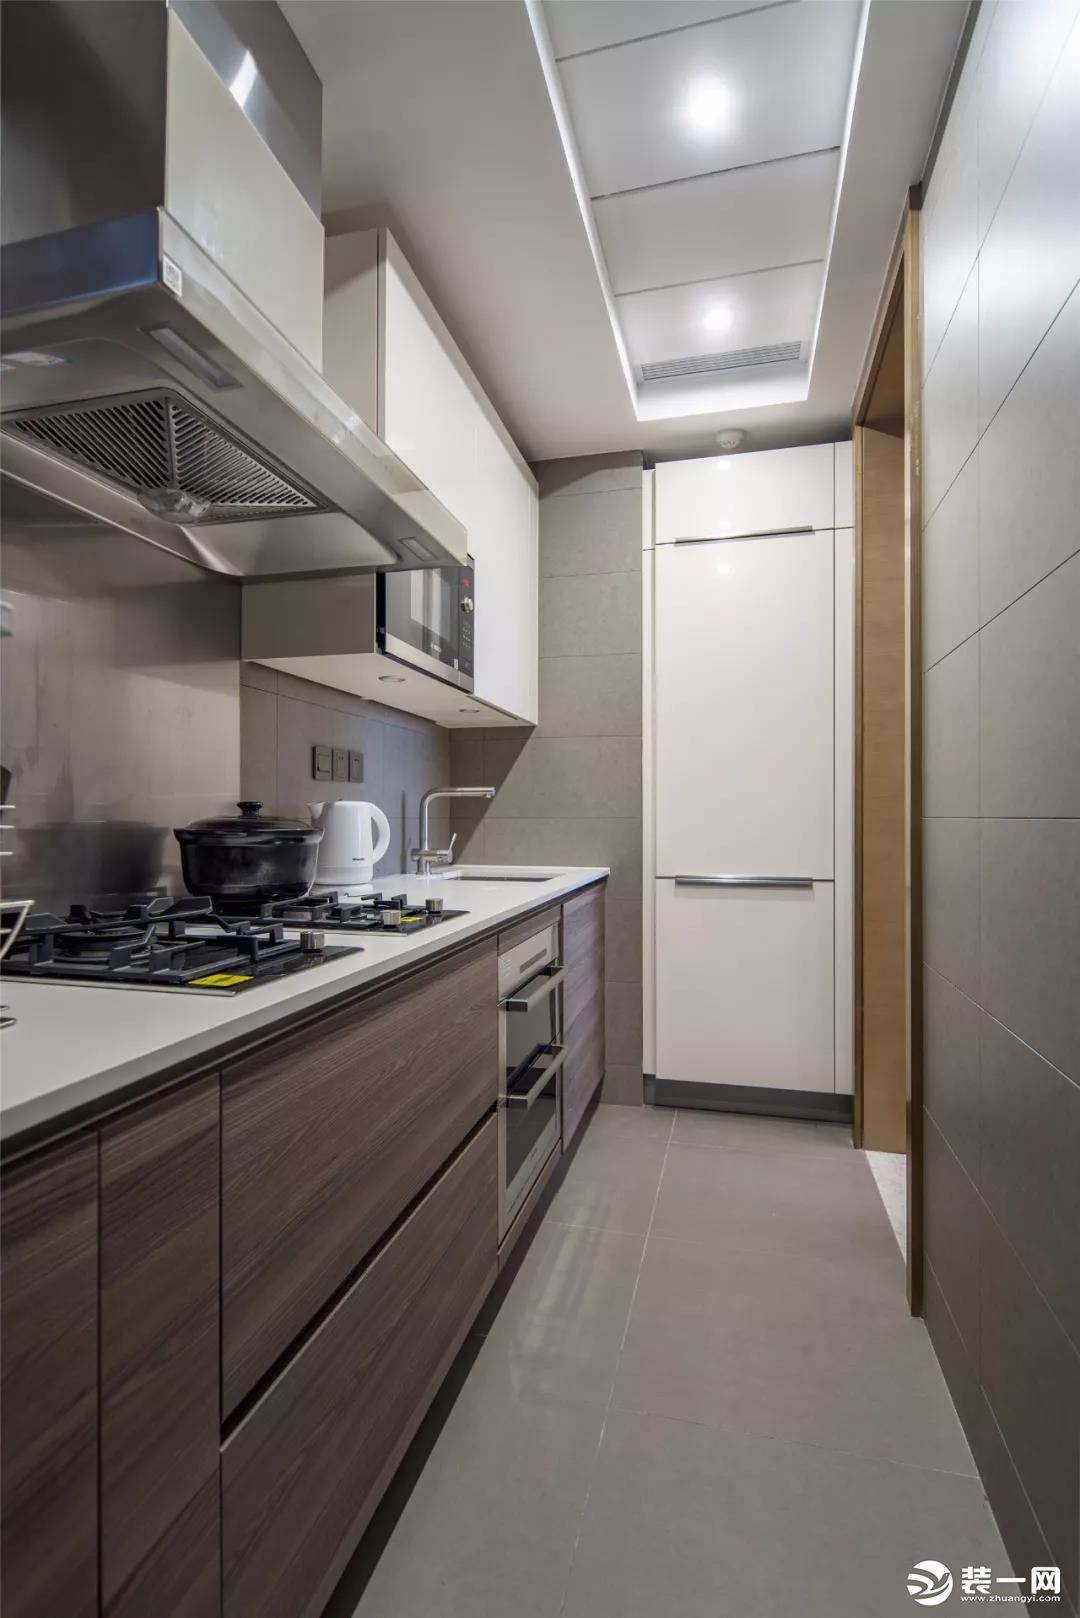 厨房的面积不大，还是一个狭长的空间，所以橱柜也是一字型的布局方案，设计师把冰箱嵌入到墙内，看起来更为